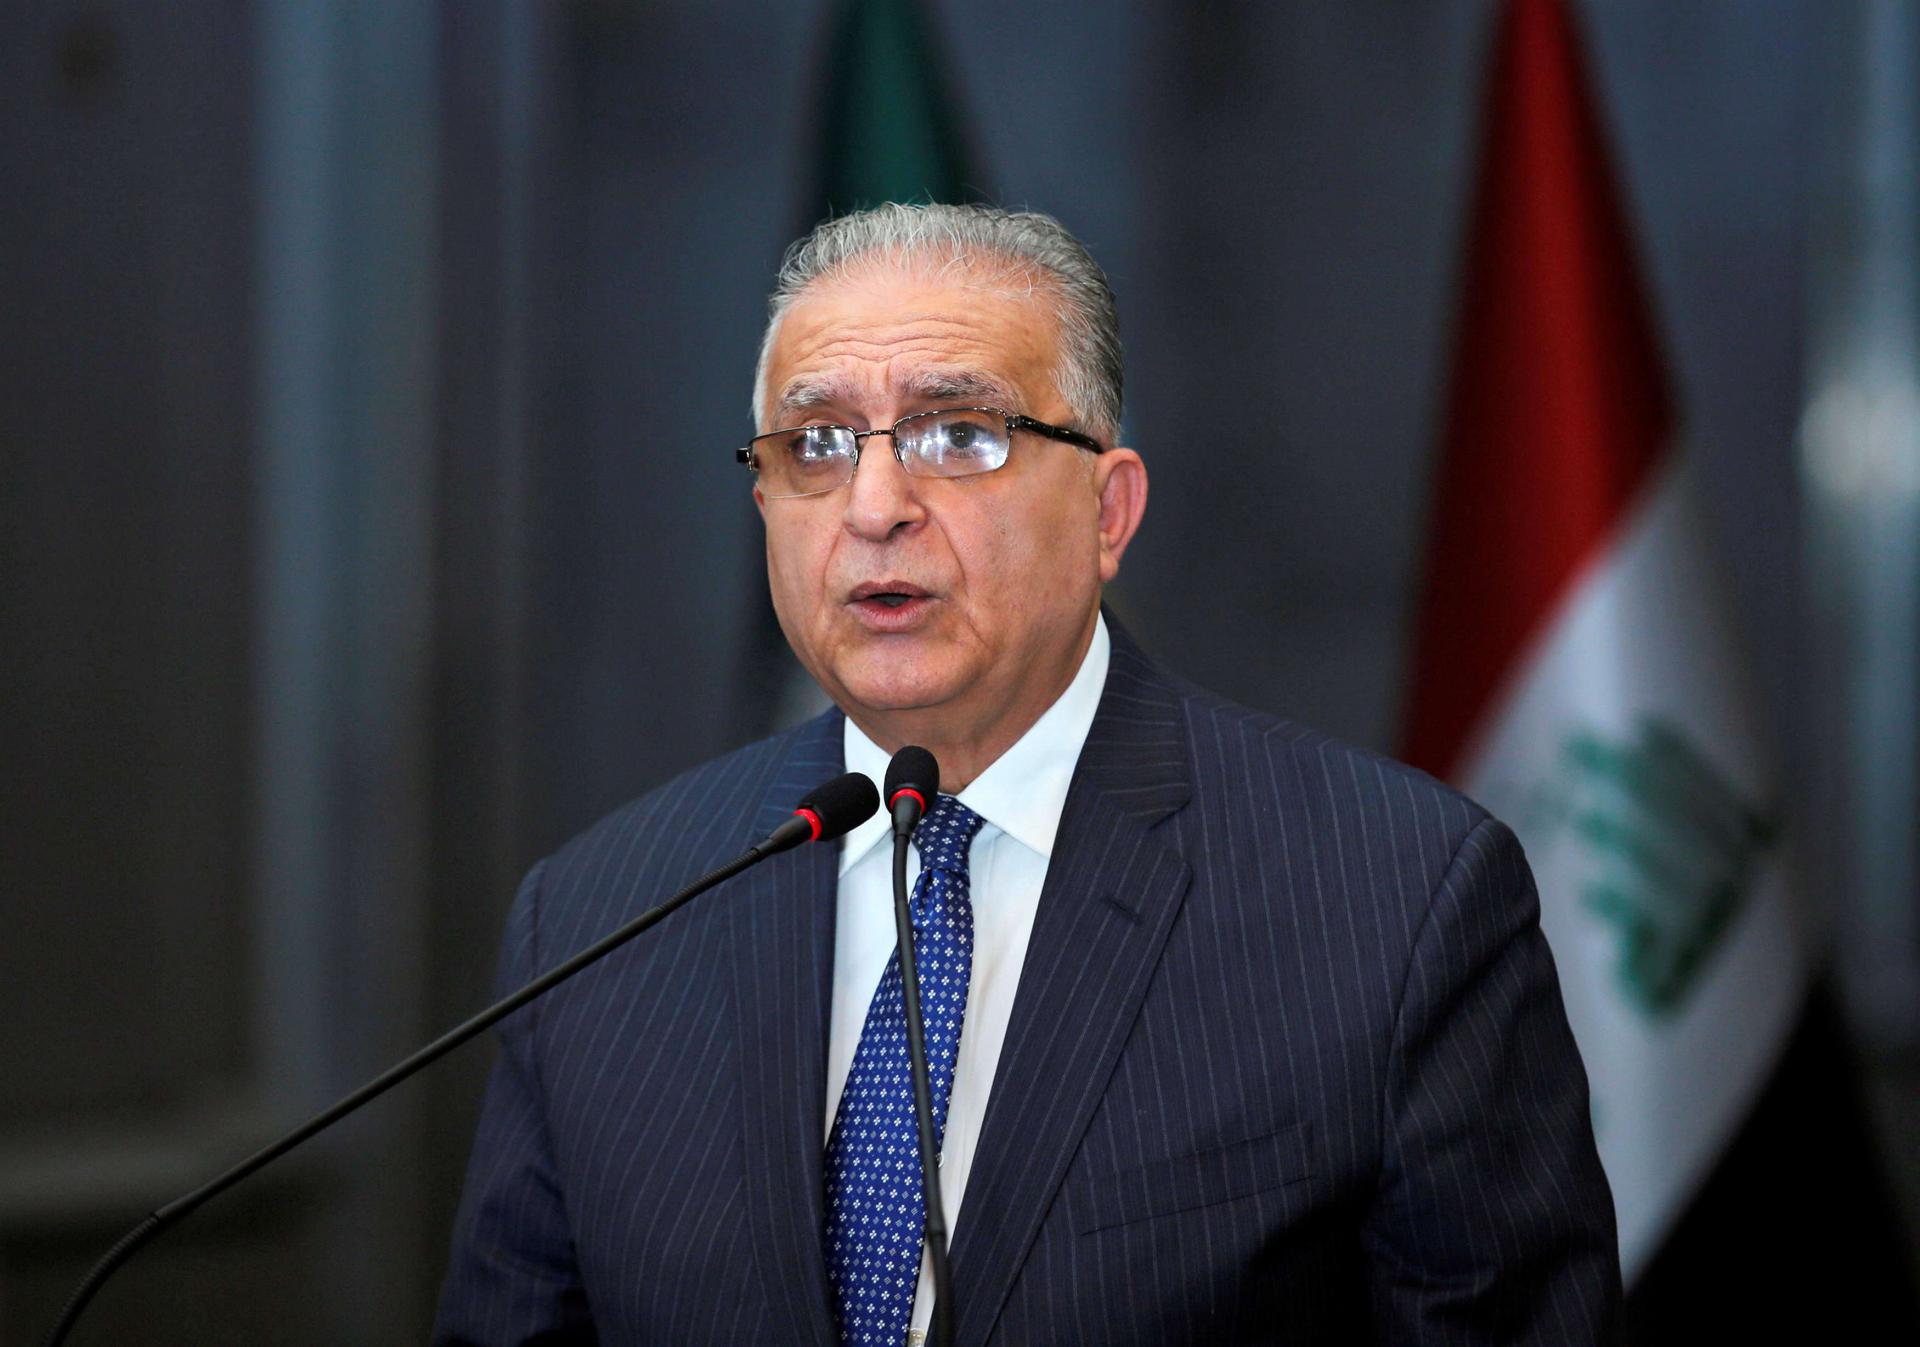  وزير الخارجية العراقي يطالب باعتذار رسمي من إيران